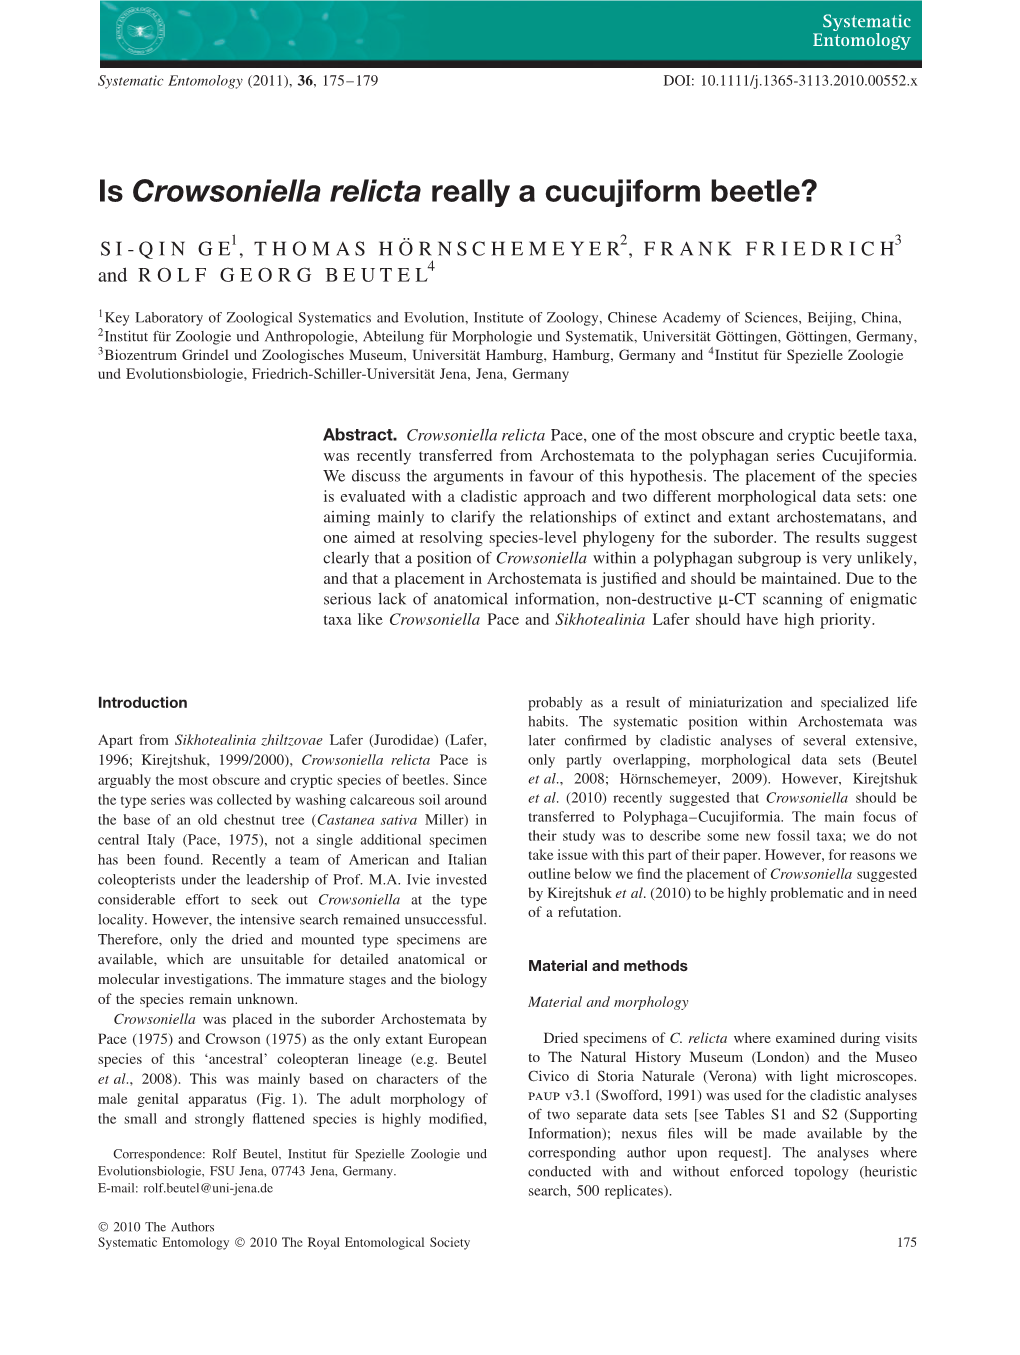 Is Crowsoniella Relicta Really a Cucujiform Beetle?